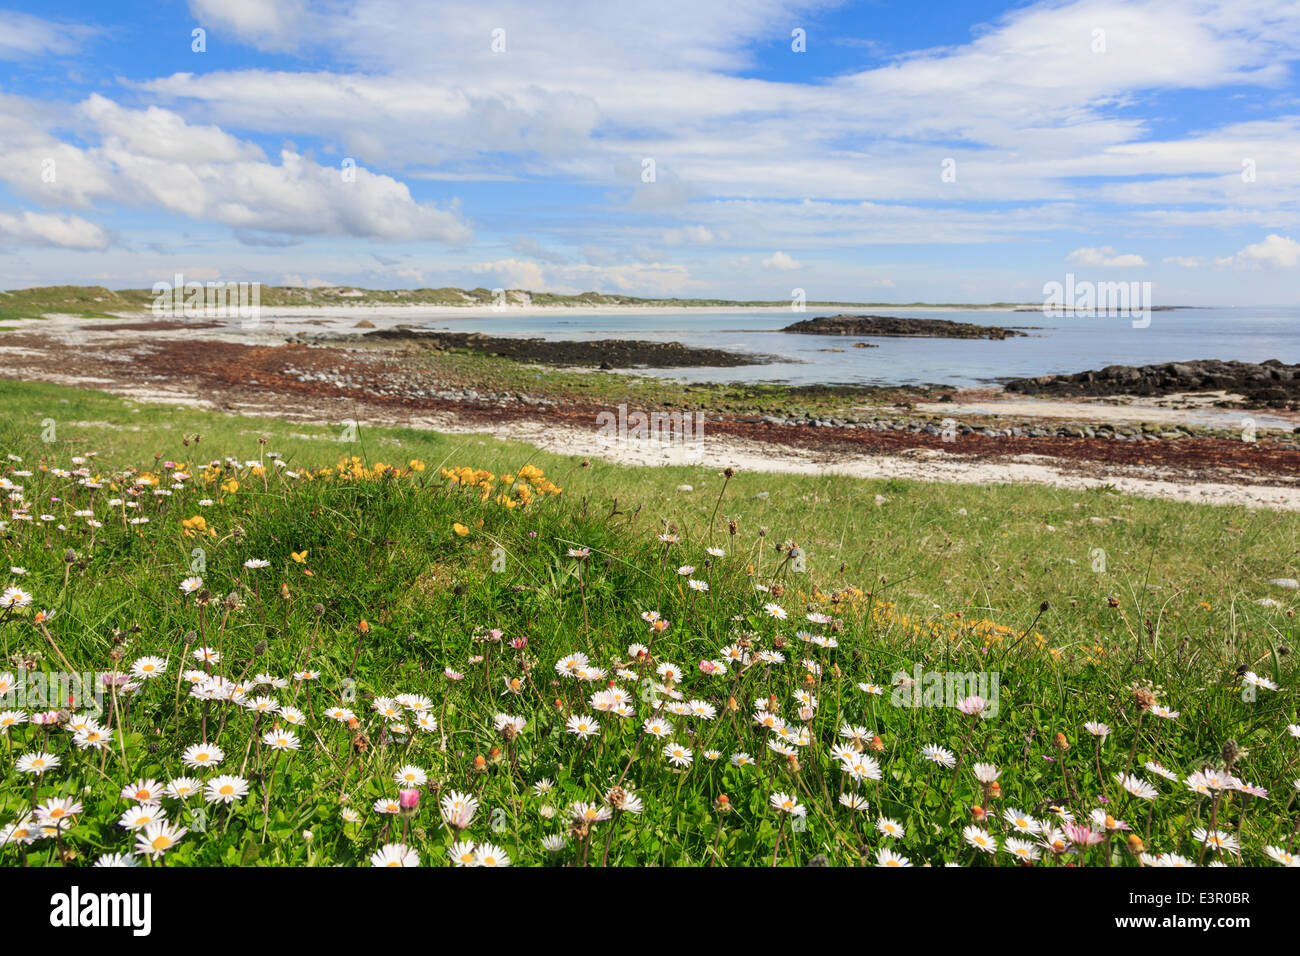 Fleurs sauvages poussant dans les prairies "machair" sur la côte ouest. Plage de Traigh ira Balranald, North Uist, Outer Hebrides, Western Isles, Ecosse, Royaume-Uni Banque D'Images